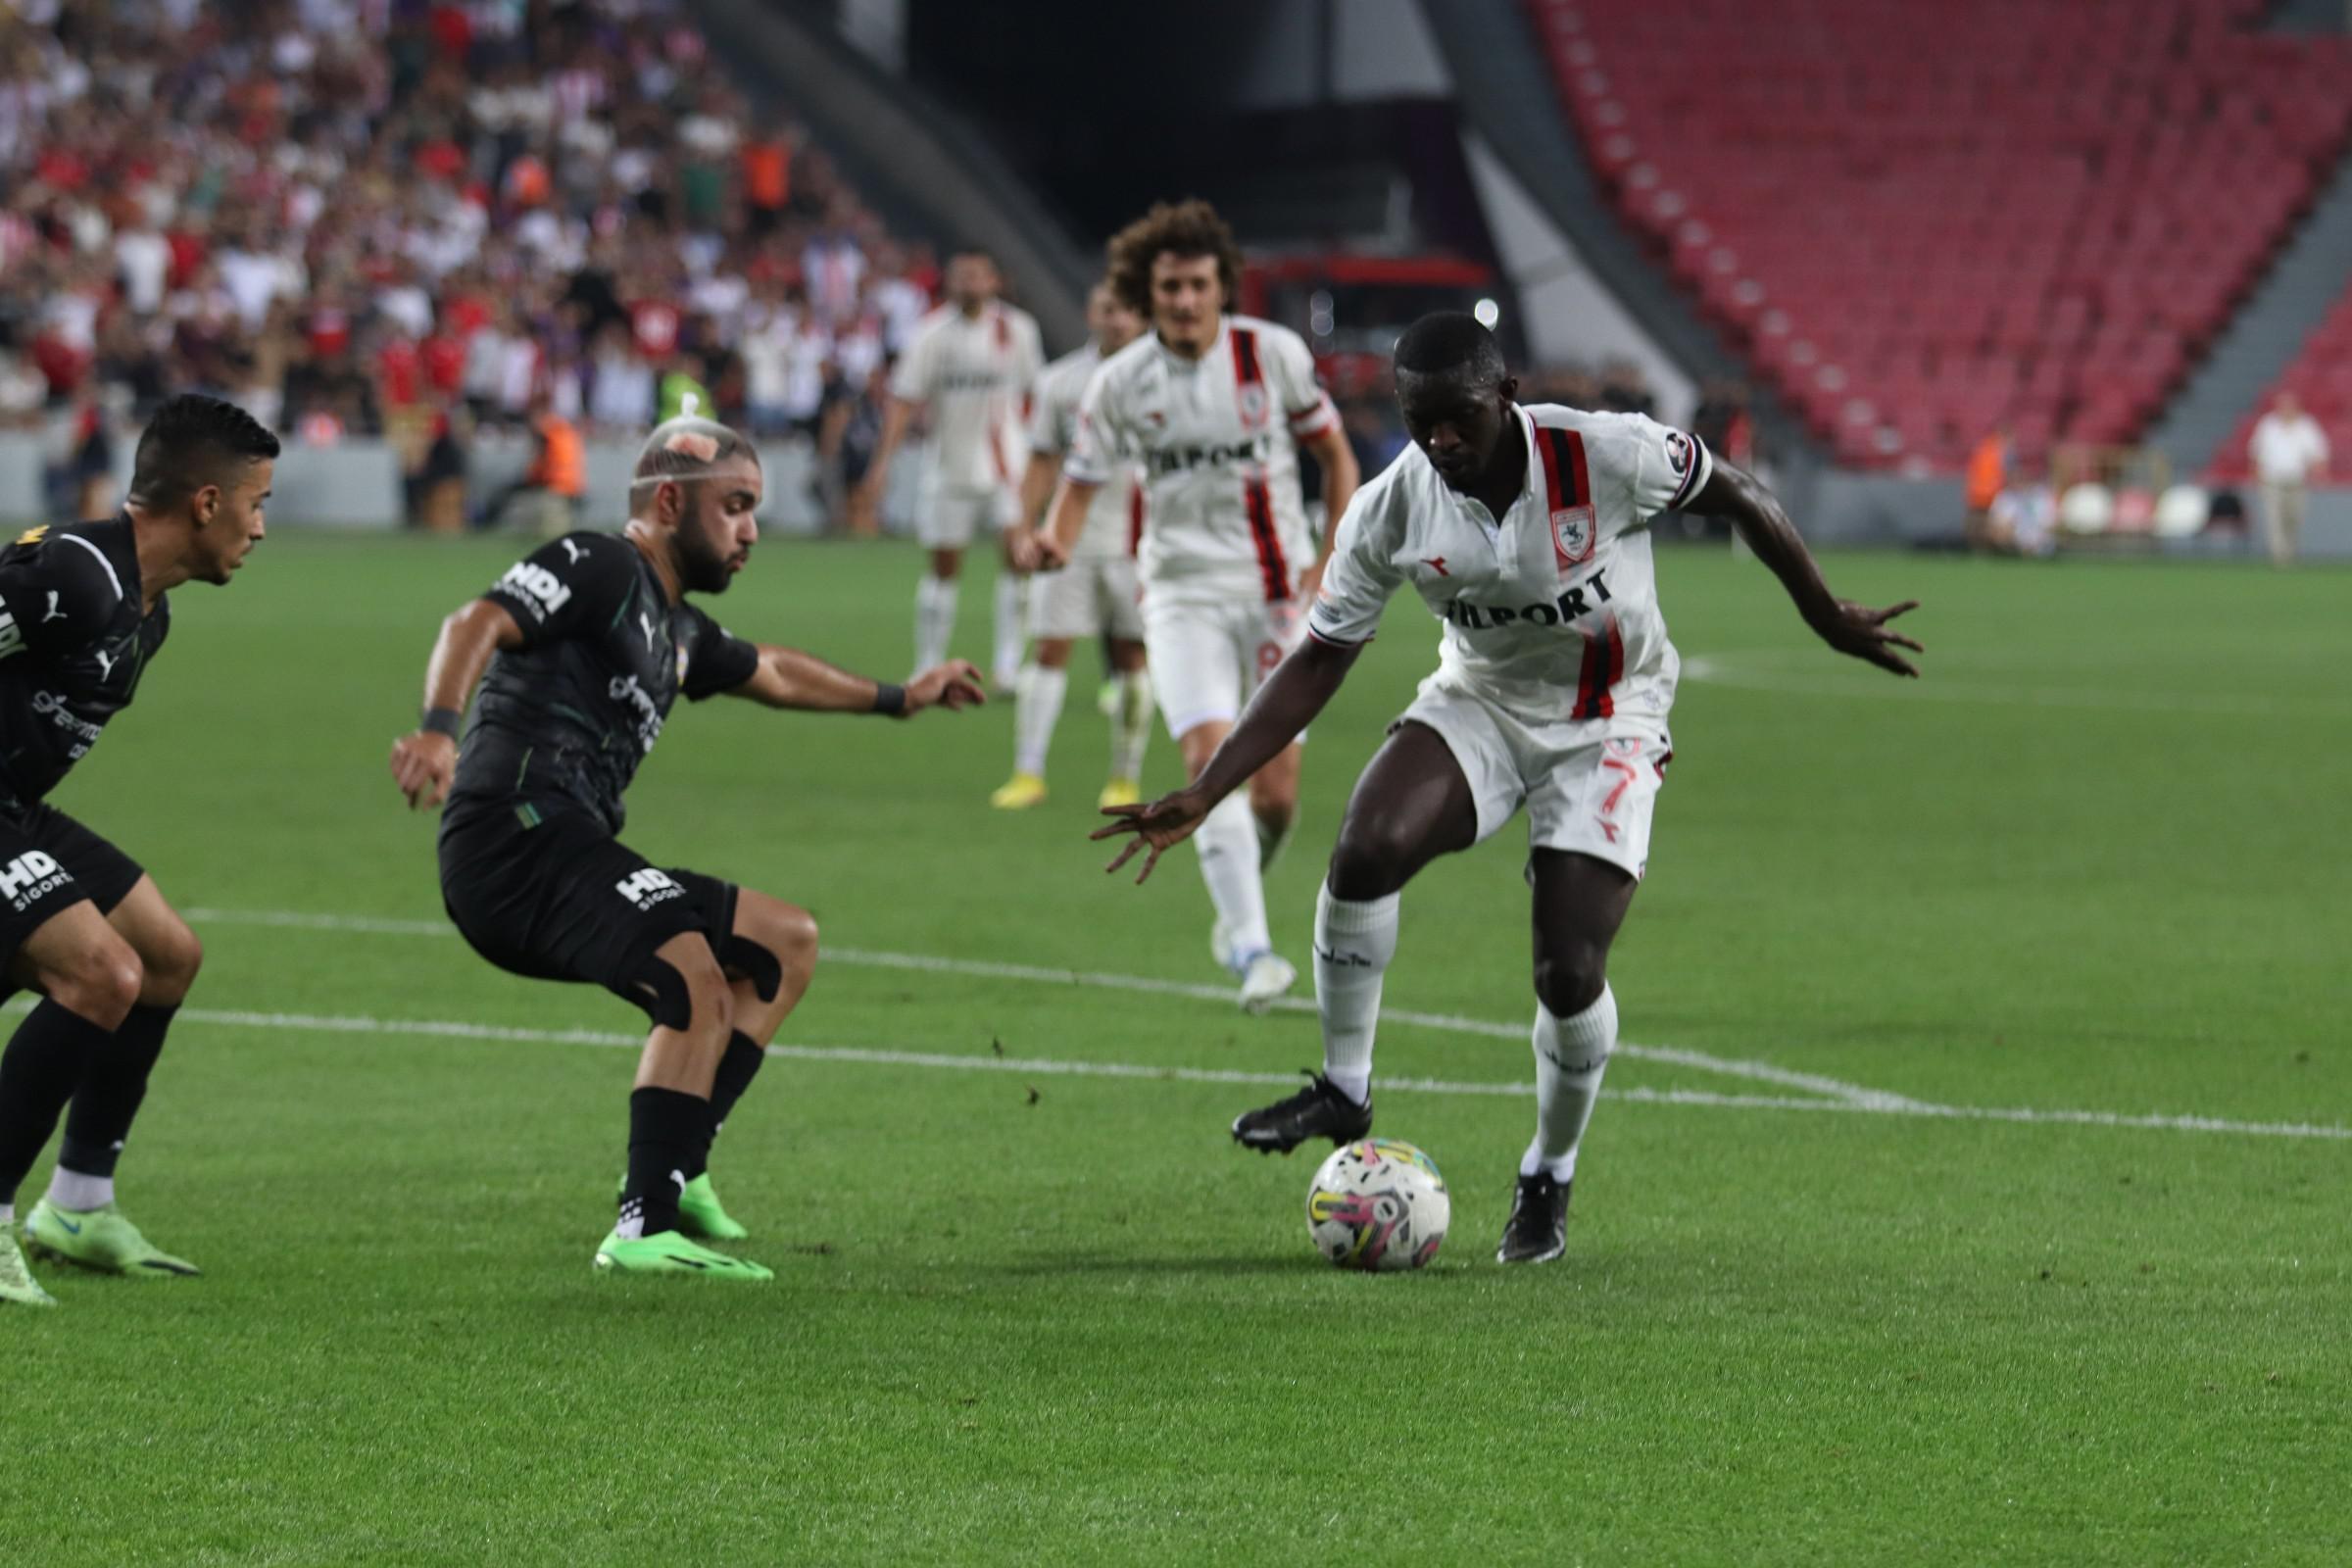 (ÖZET) Samsunspor - Eyüpspor maç sonucu: 1-1